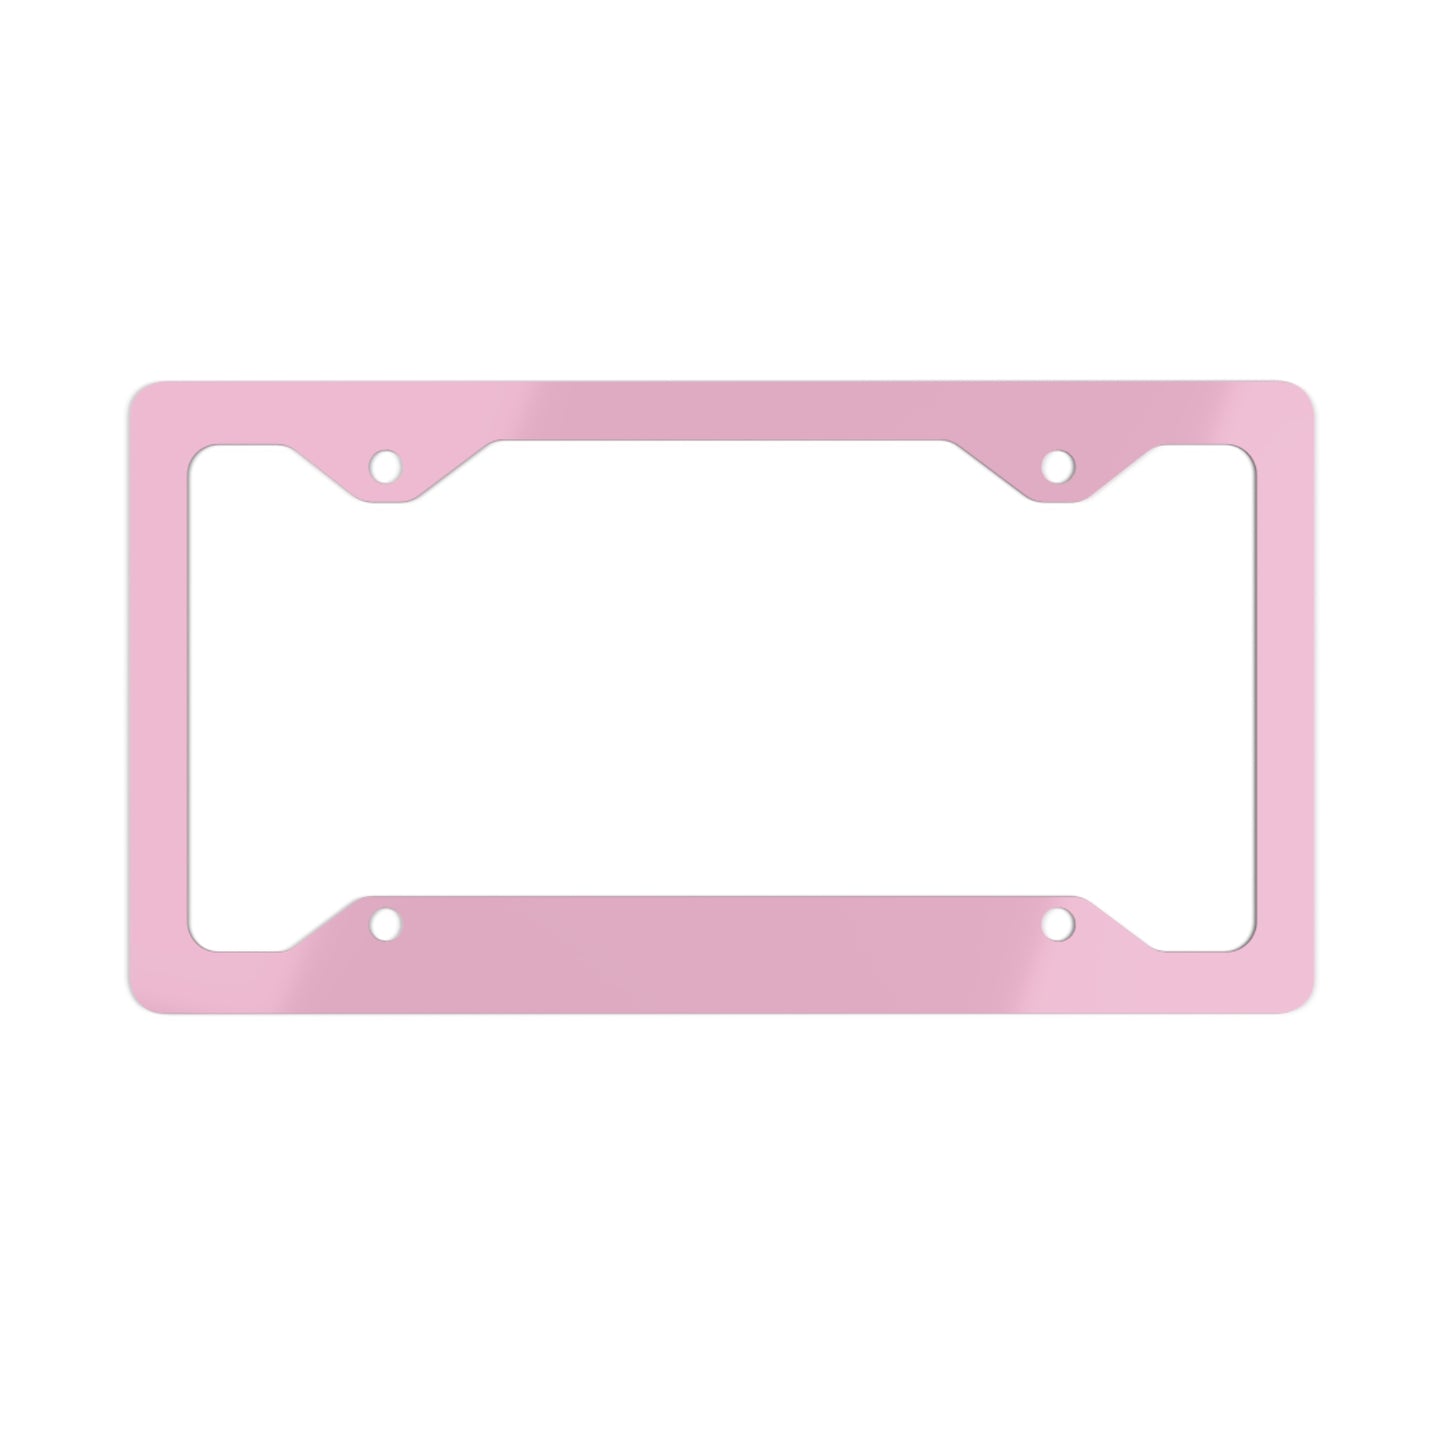 Light Pink License Plate Frame